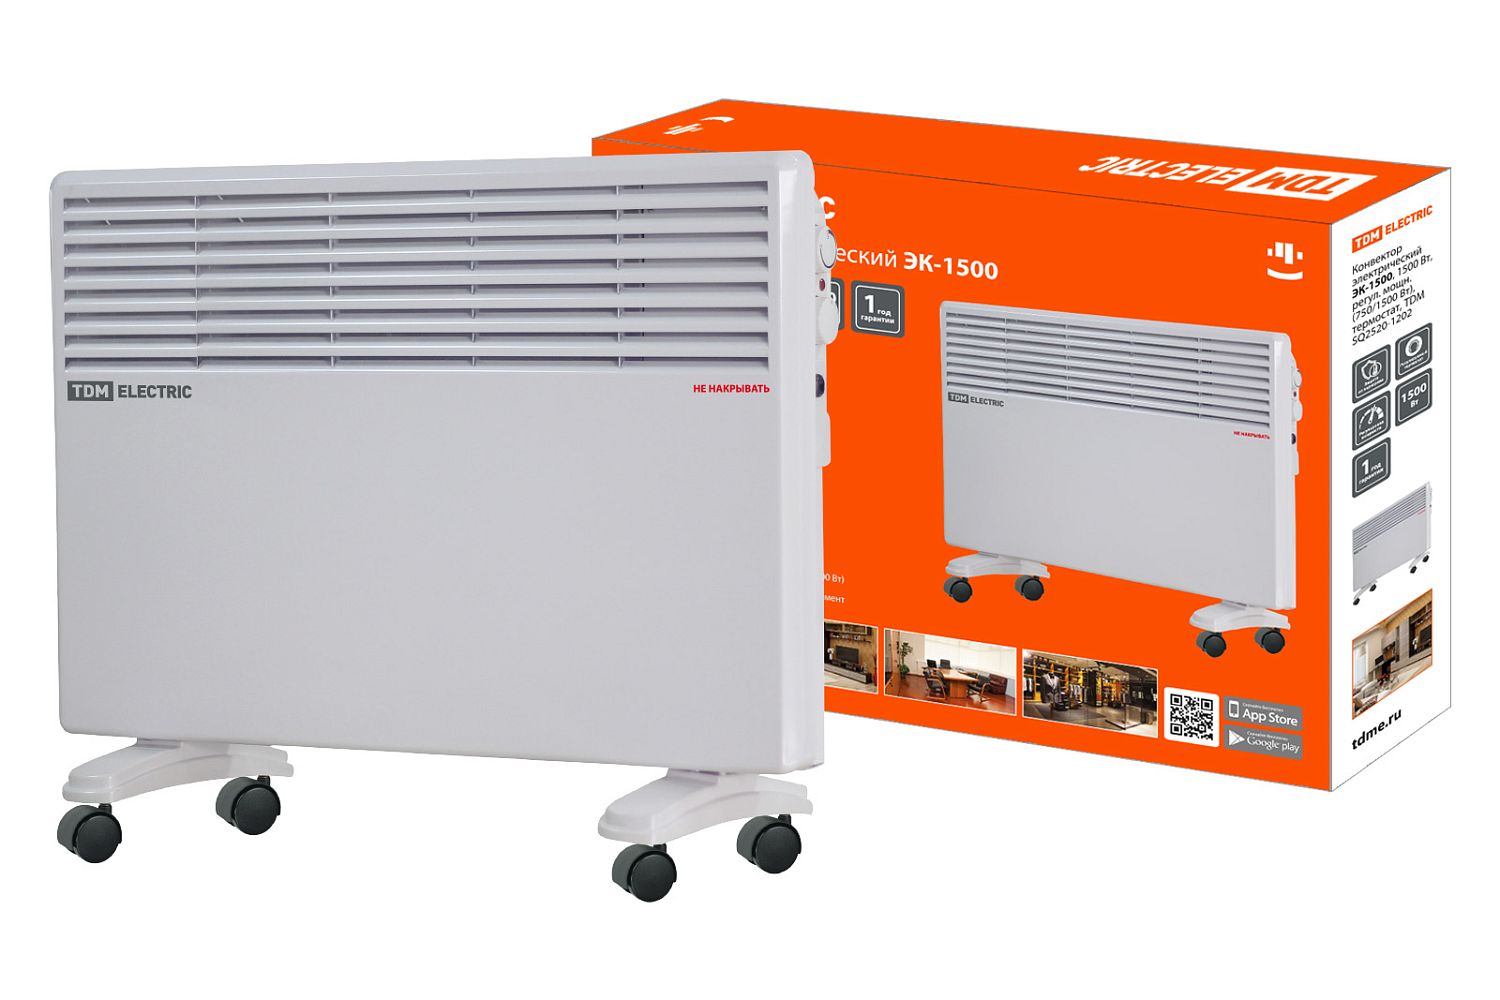 TDM Конвектор электрический ЭК-1500, 1500 Вт, регул. мощн. (750/1500 Вт), термостат, TDM /1